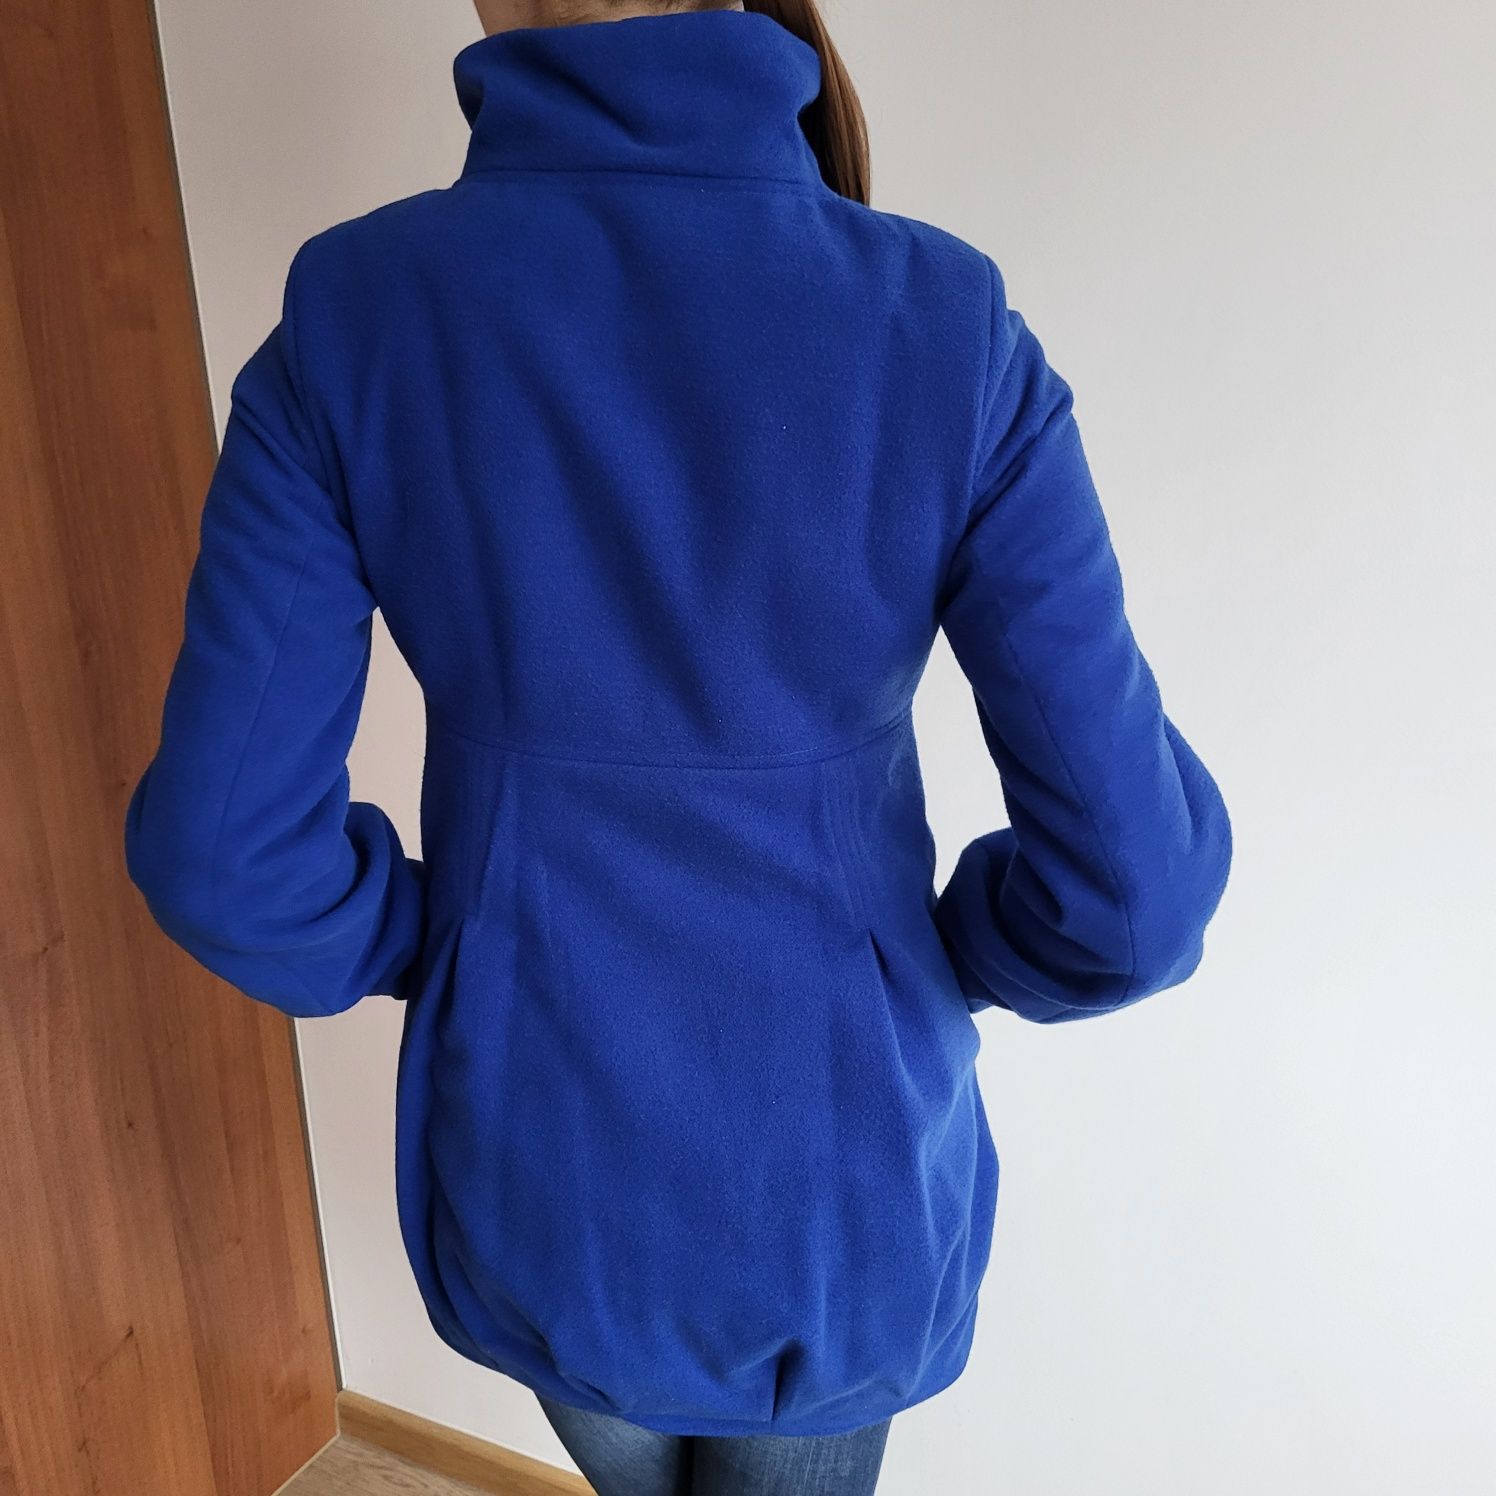 Damski niebieski płaszcz zimowy flauszowy dwurzędowy 36